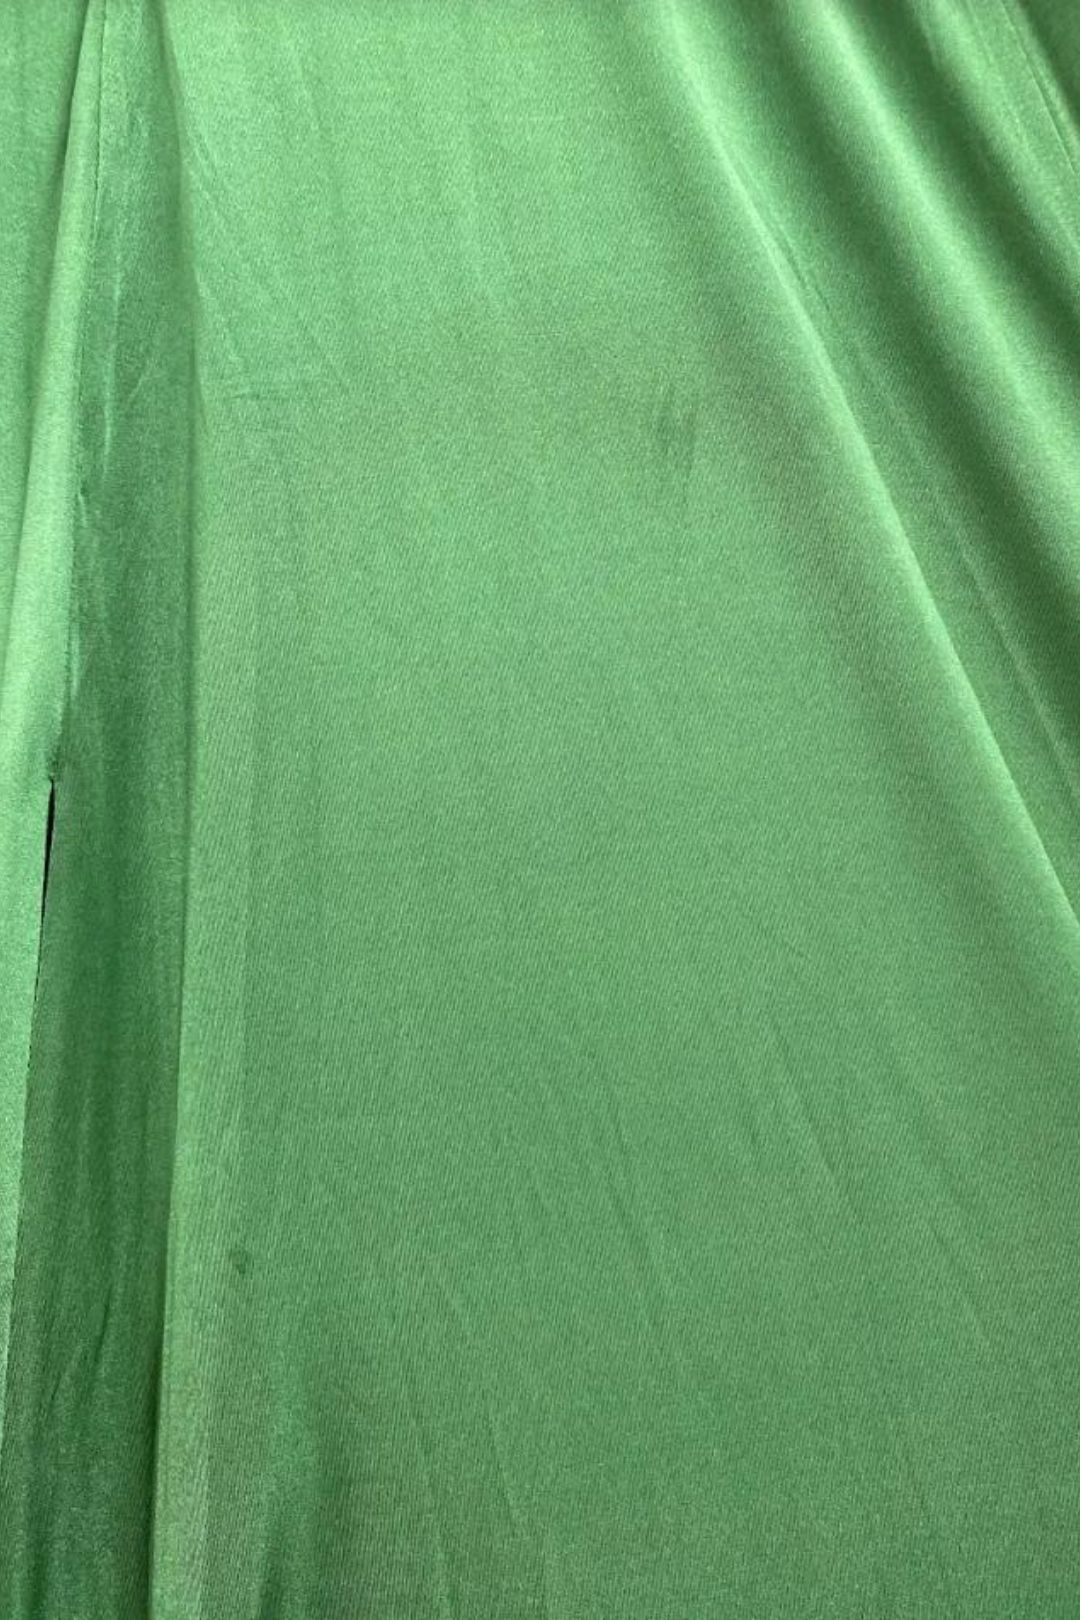 Alamour - Maritza Esmerald Green Gown